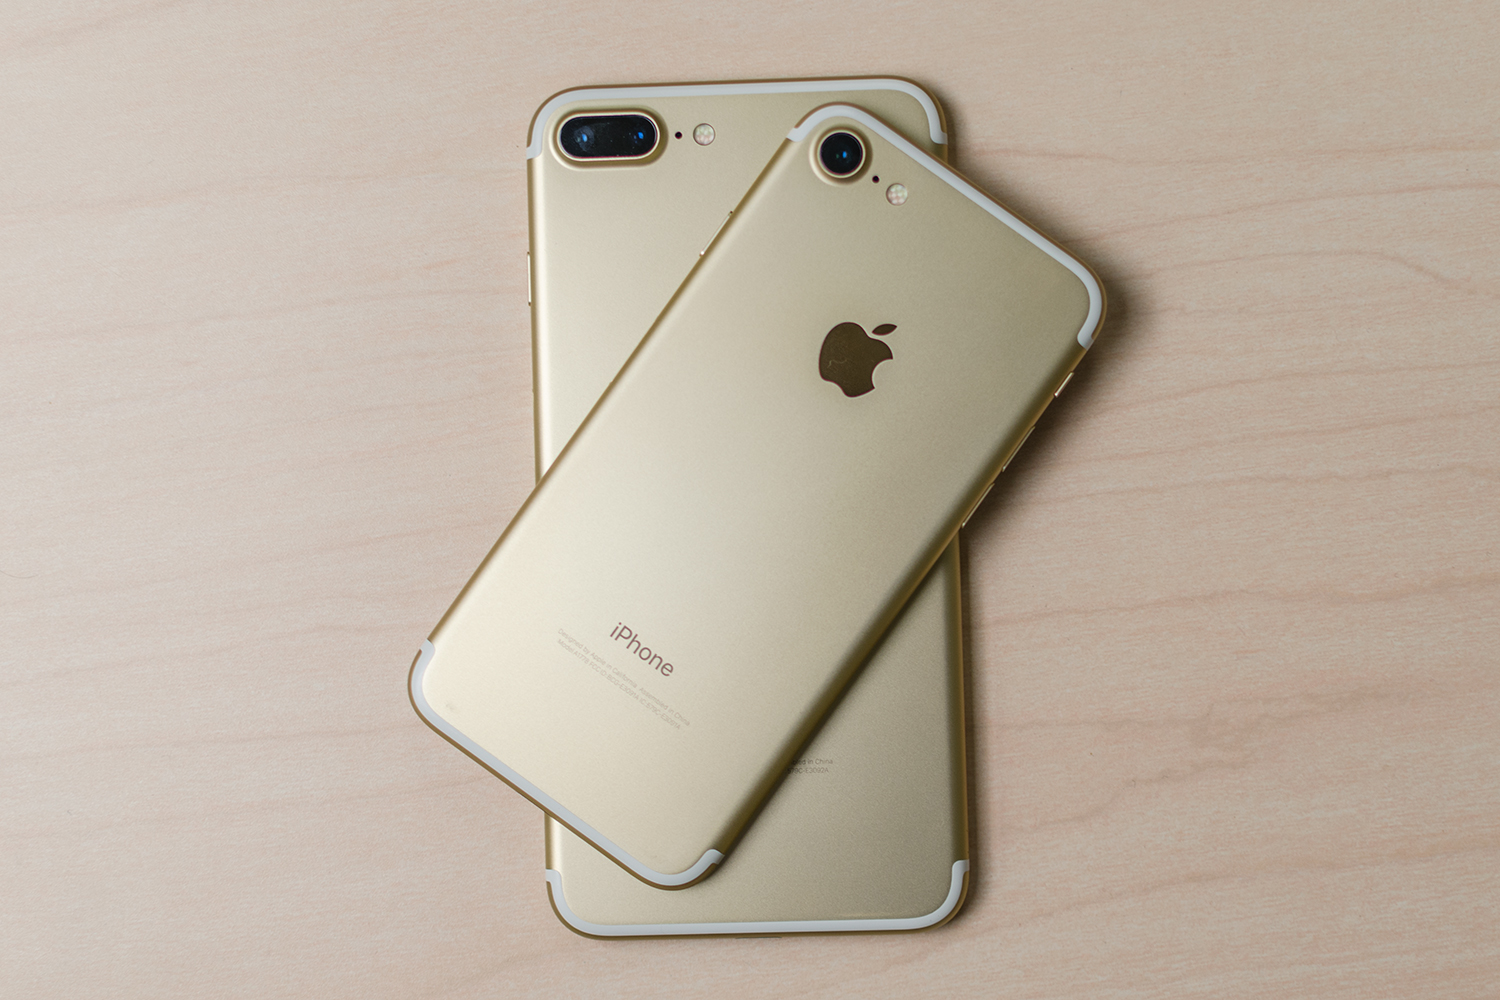 Apple iPhone 7 vs. iPhone 7 Plus, Smartphone Specs Comparison